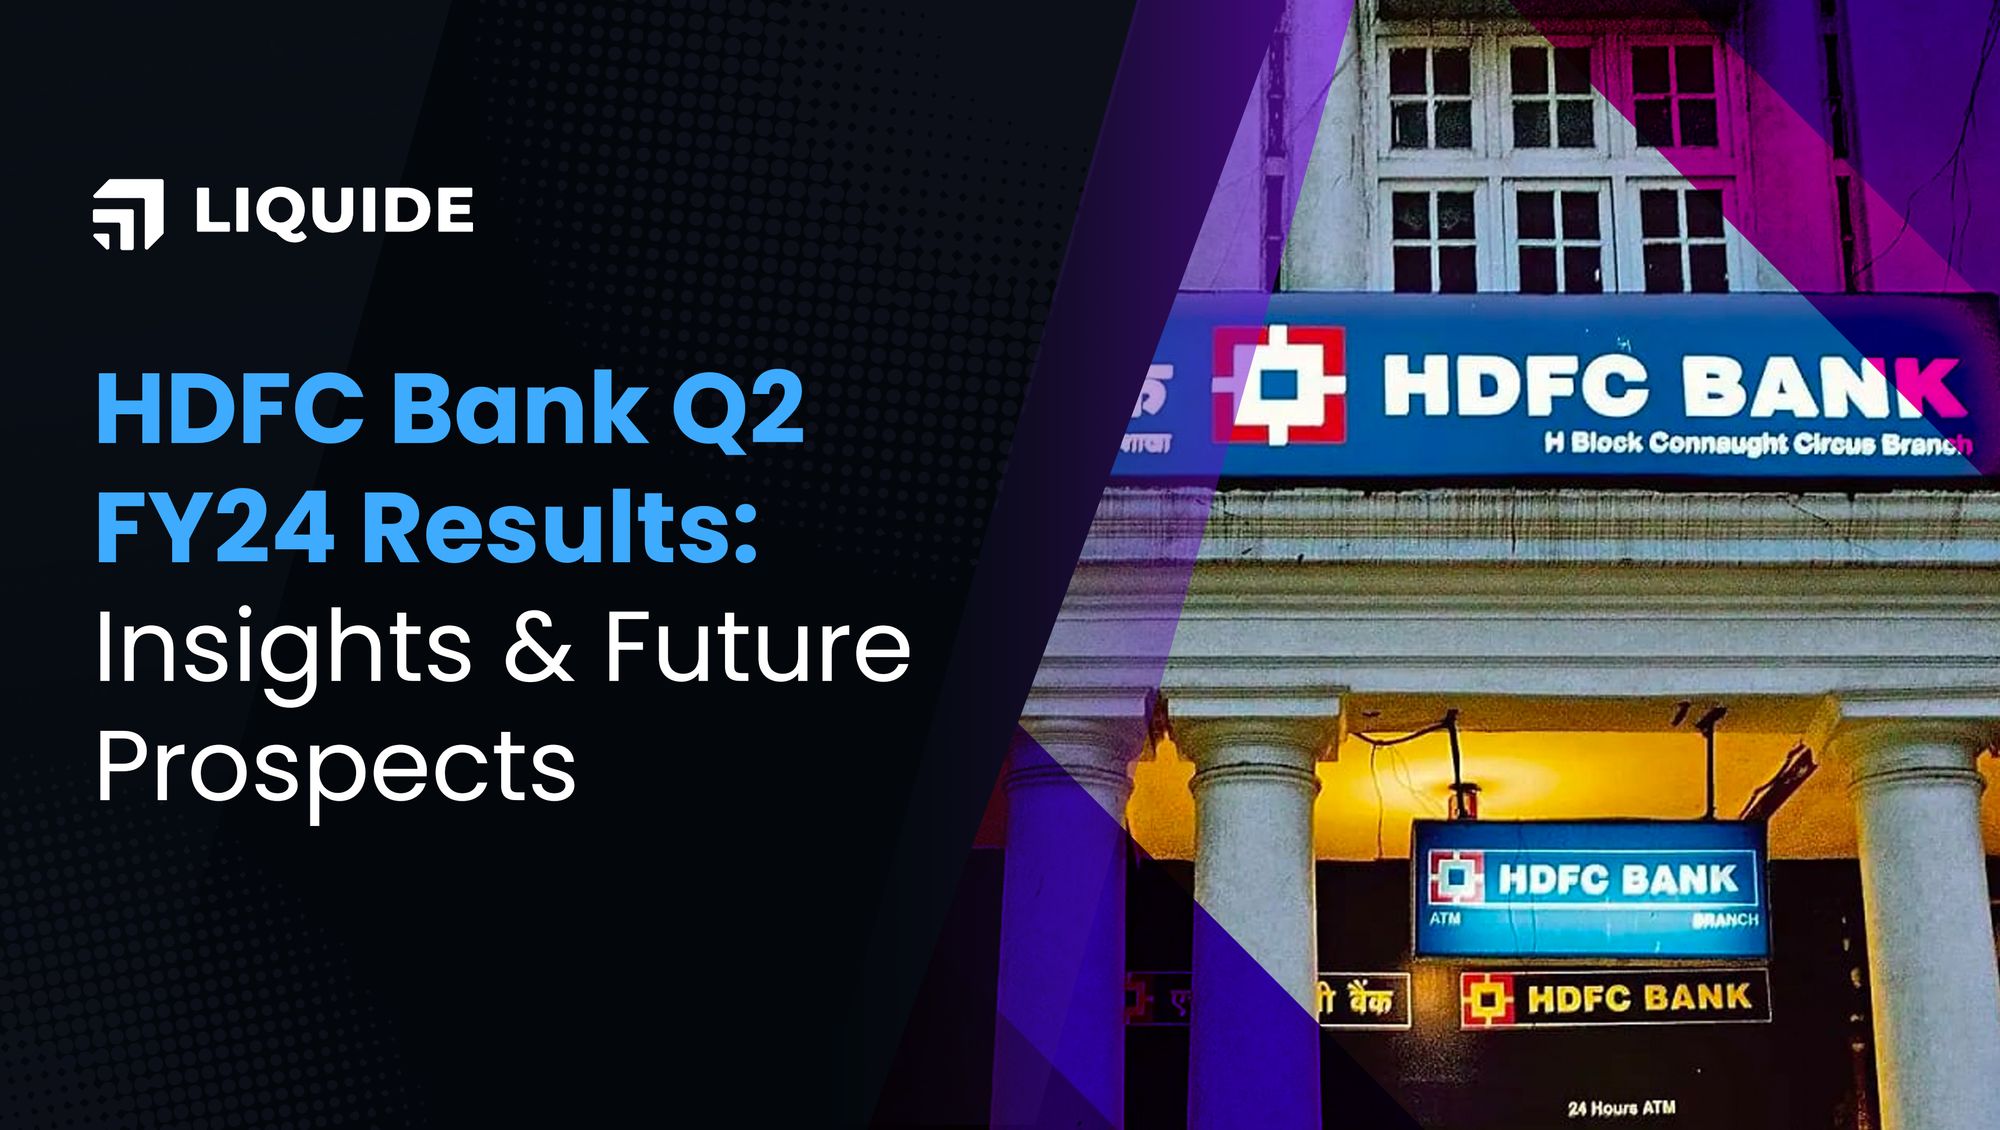 hdfc bank, hdfc bank q2 results, hdfc, liquide